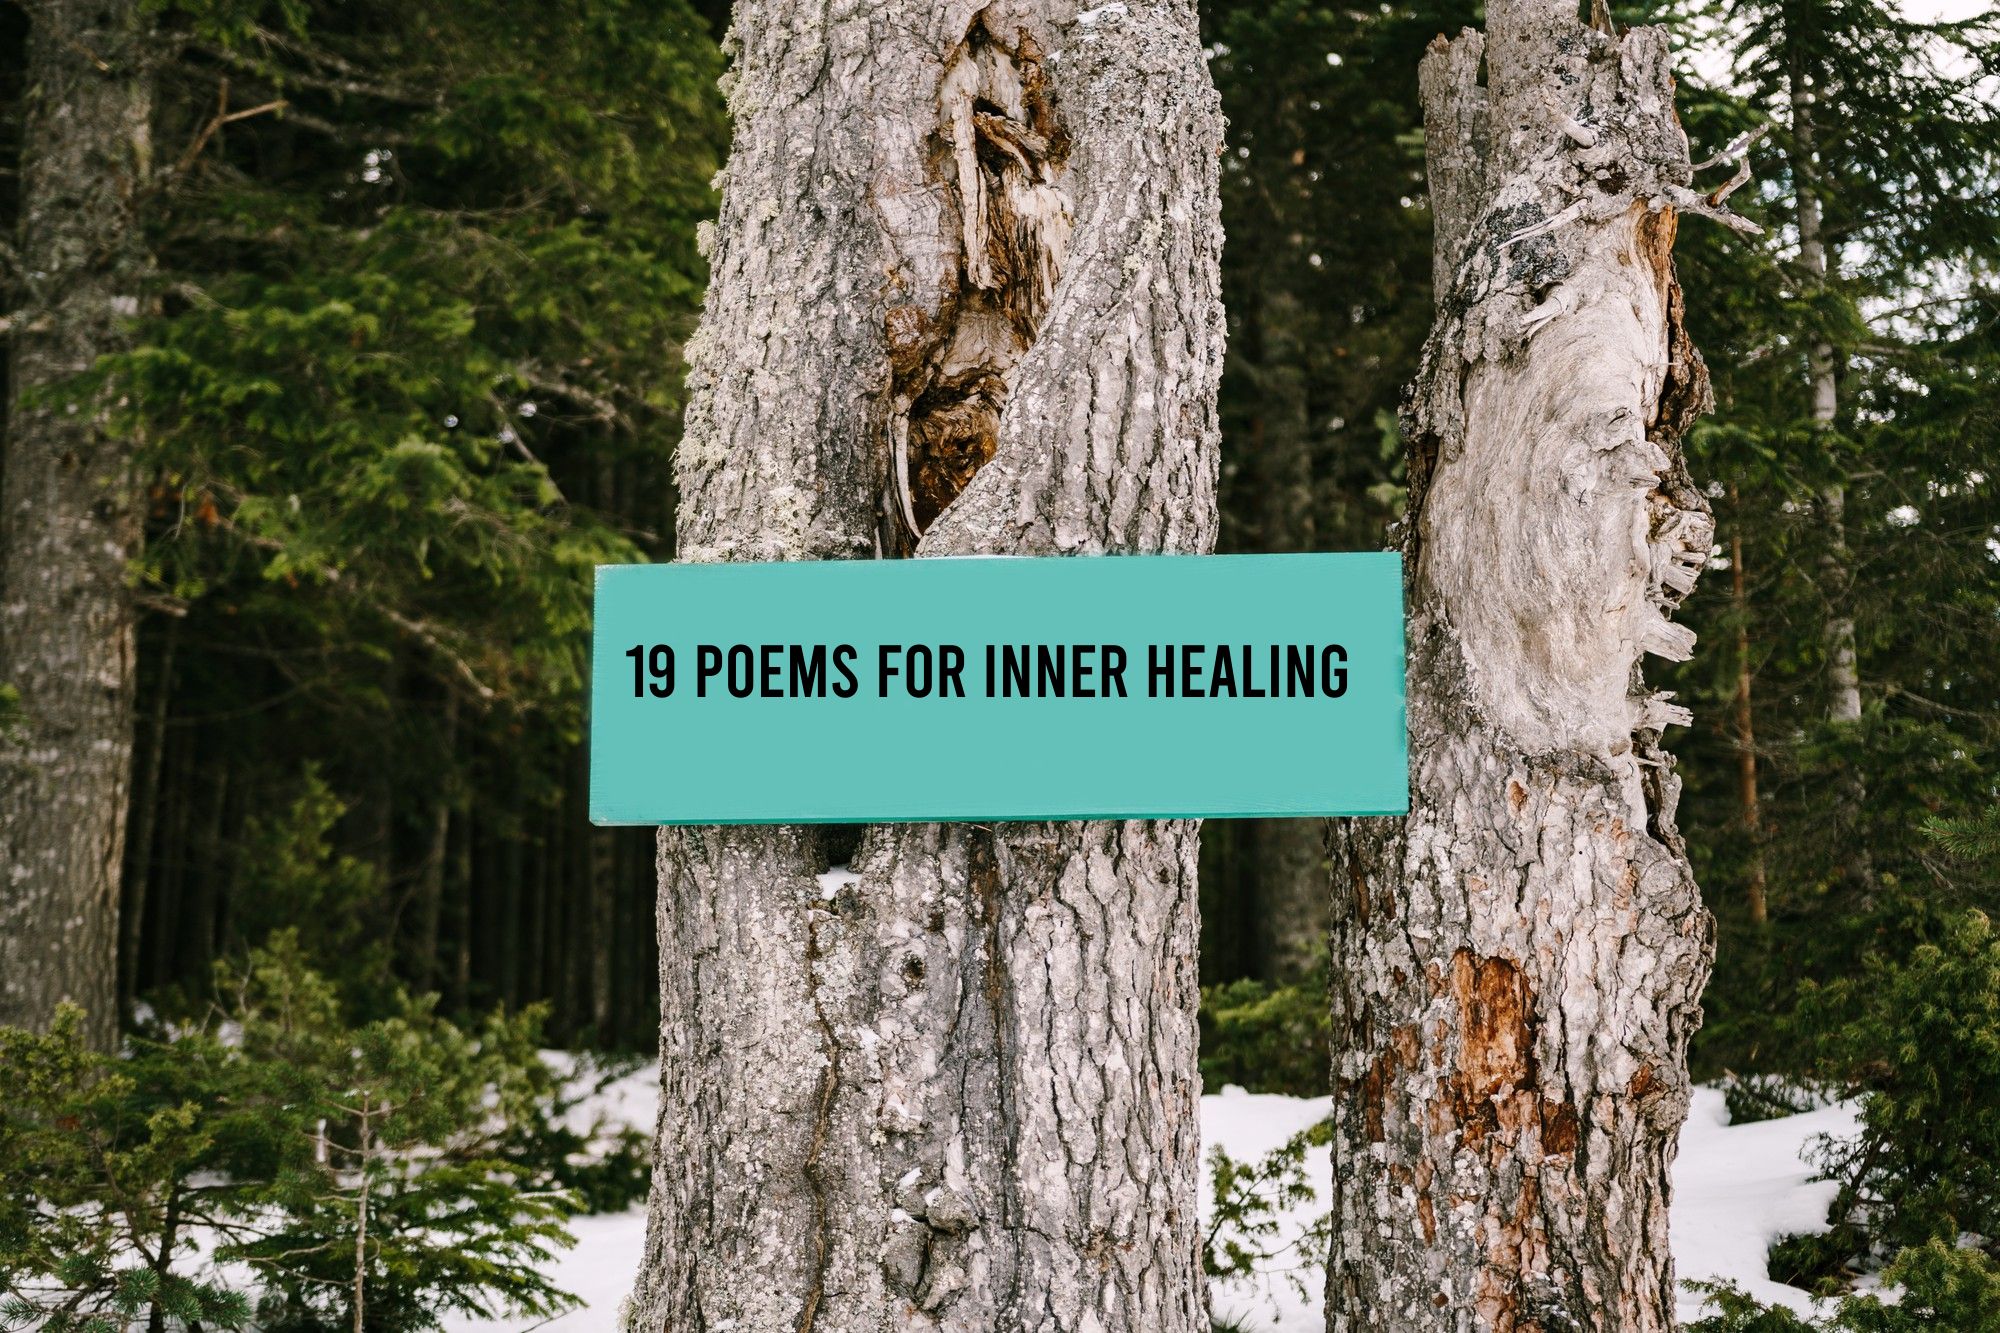 19 Poems for inner healing